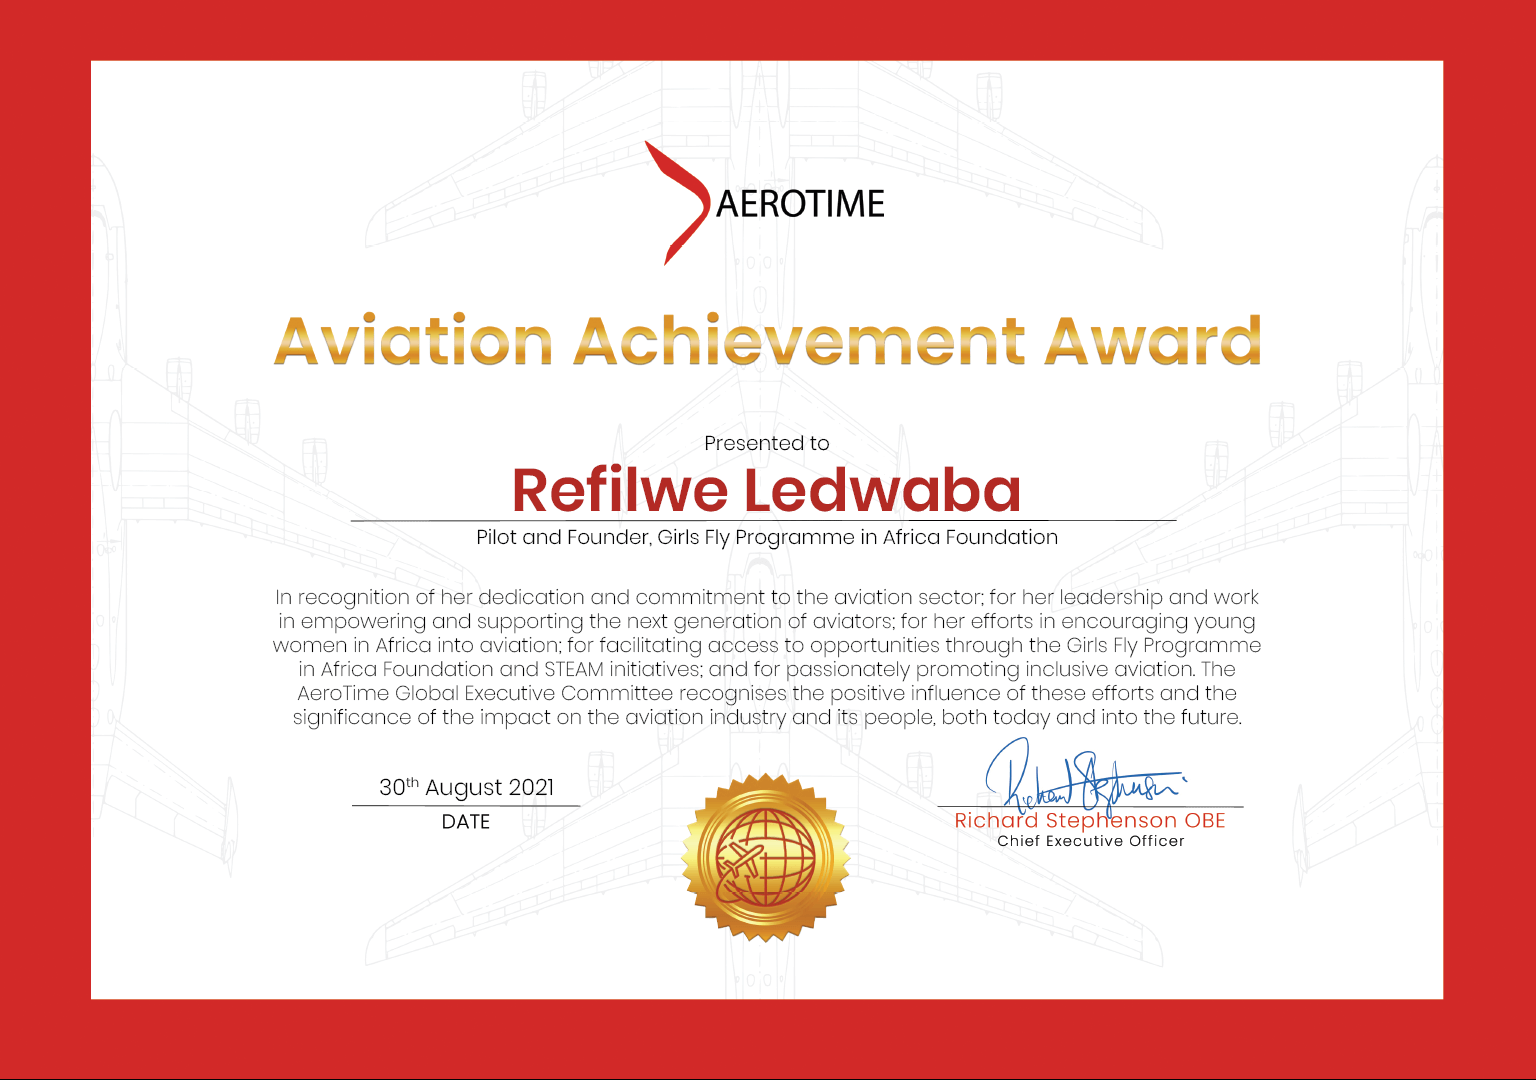 Refilwe Ledwaba, AeroTime Aviation Achievement Award